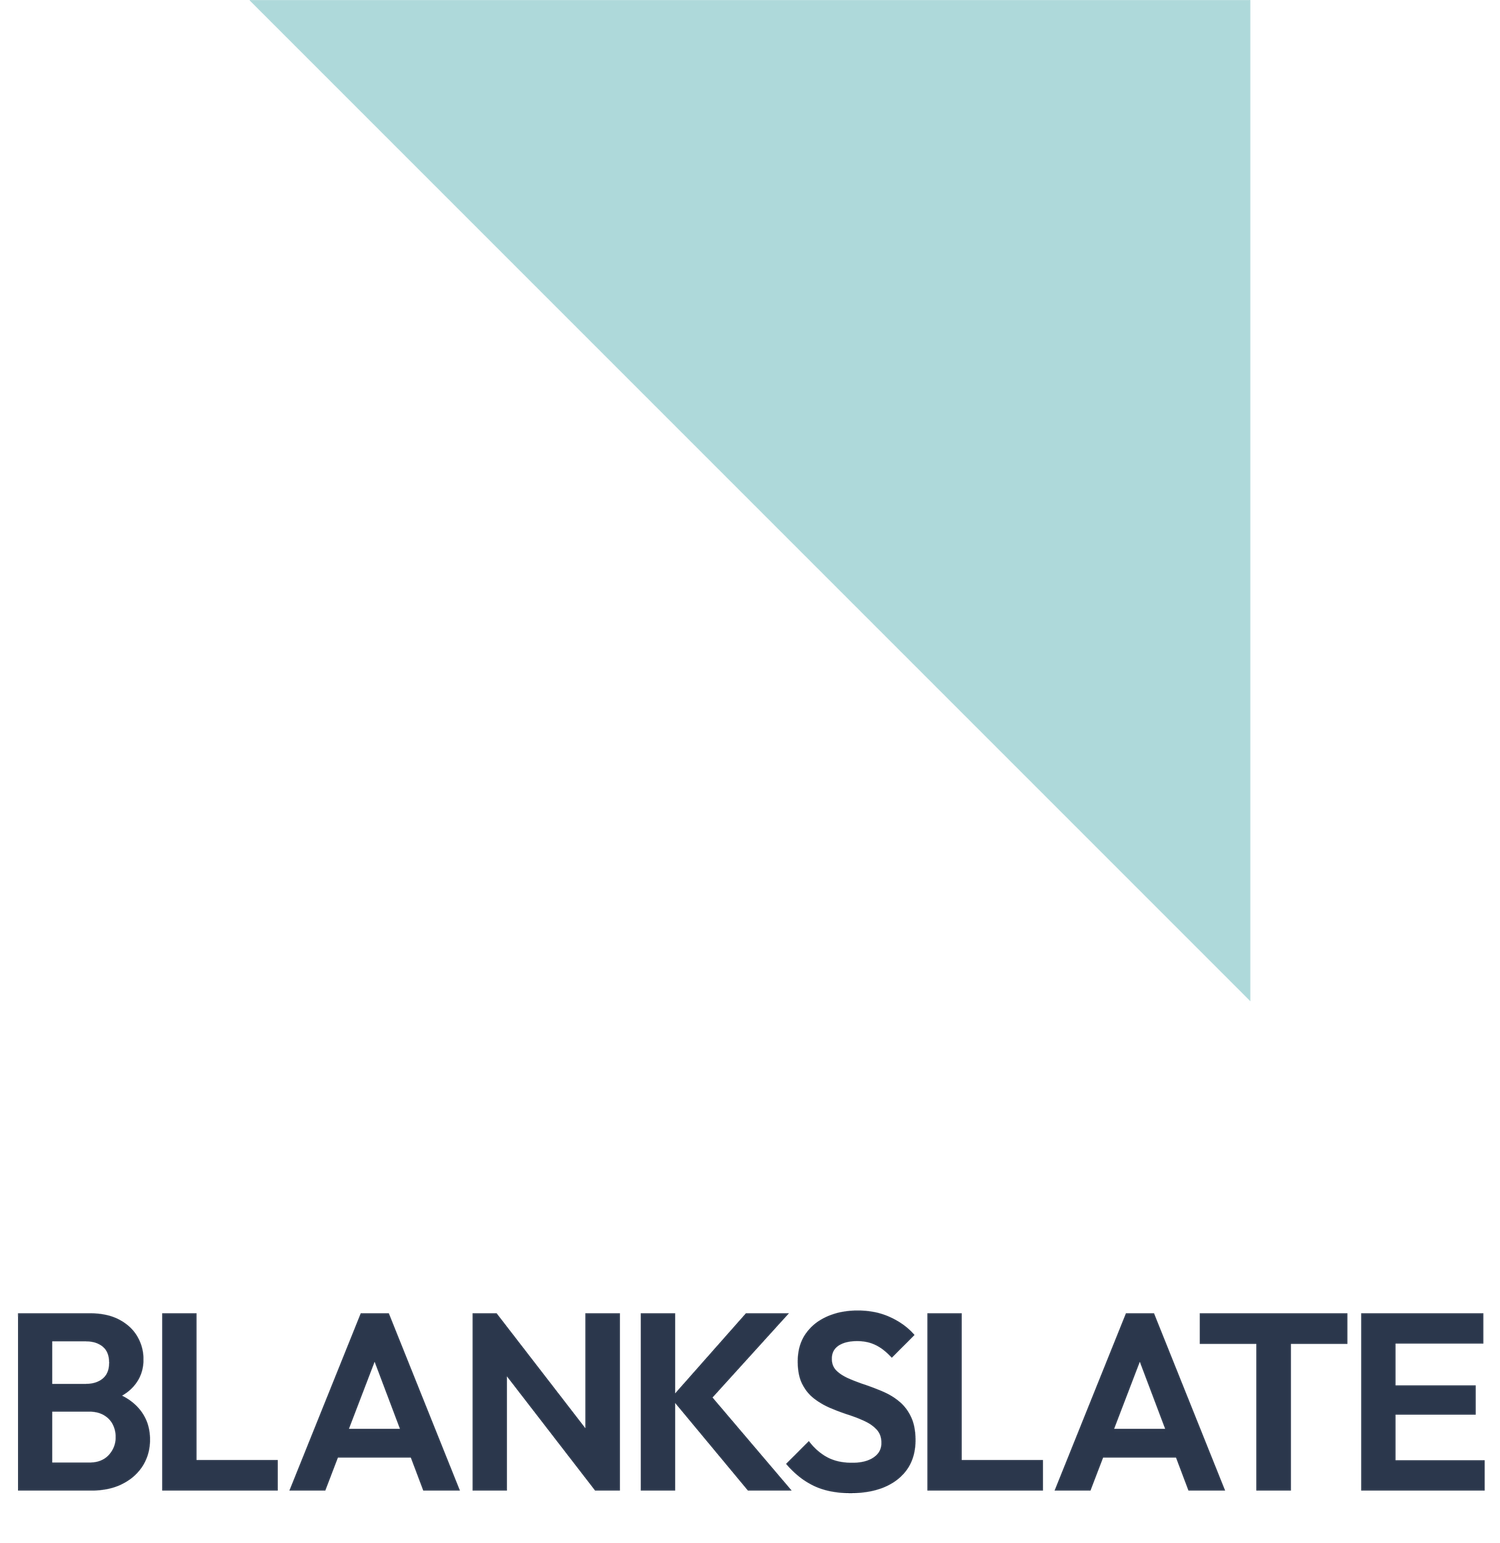 Blankslate Creative Inc.